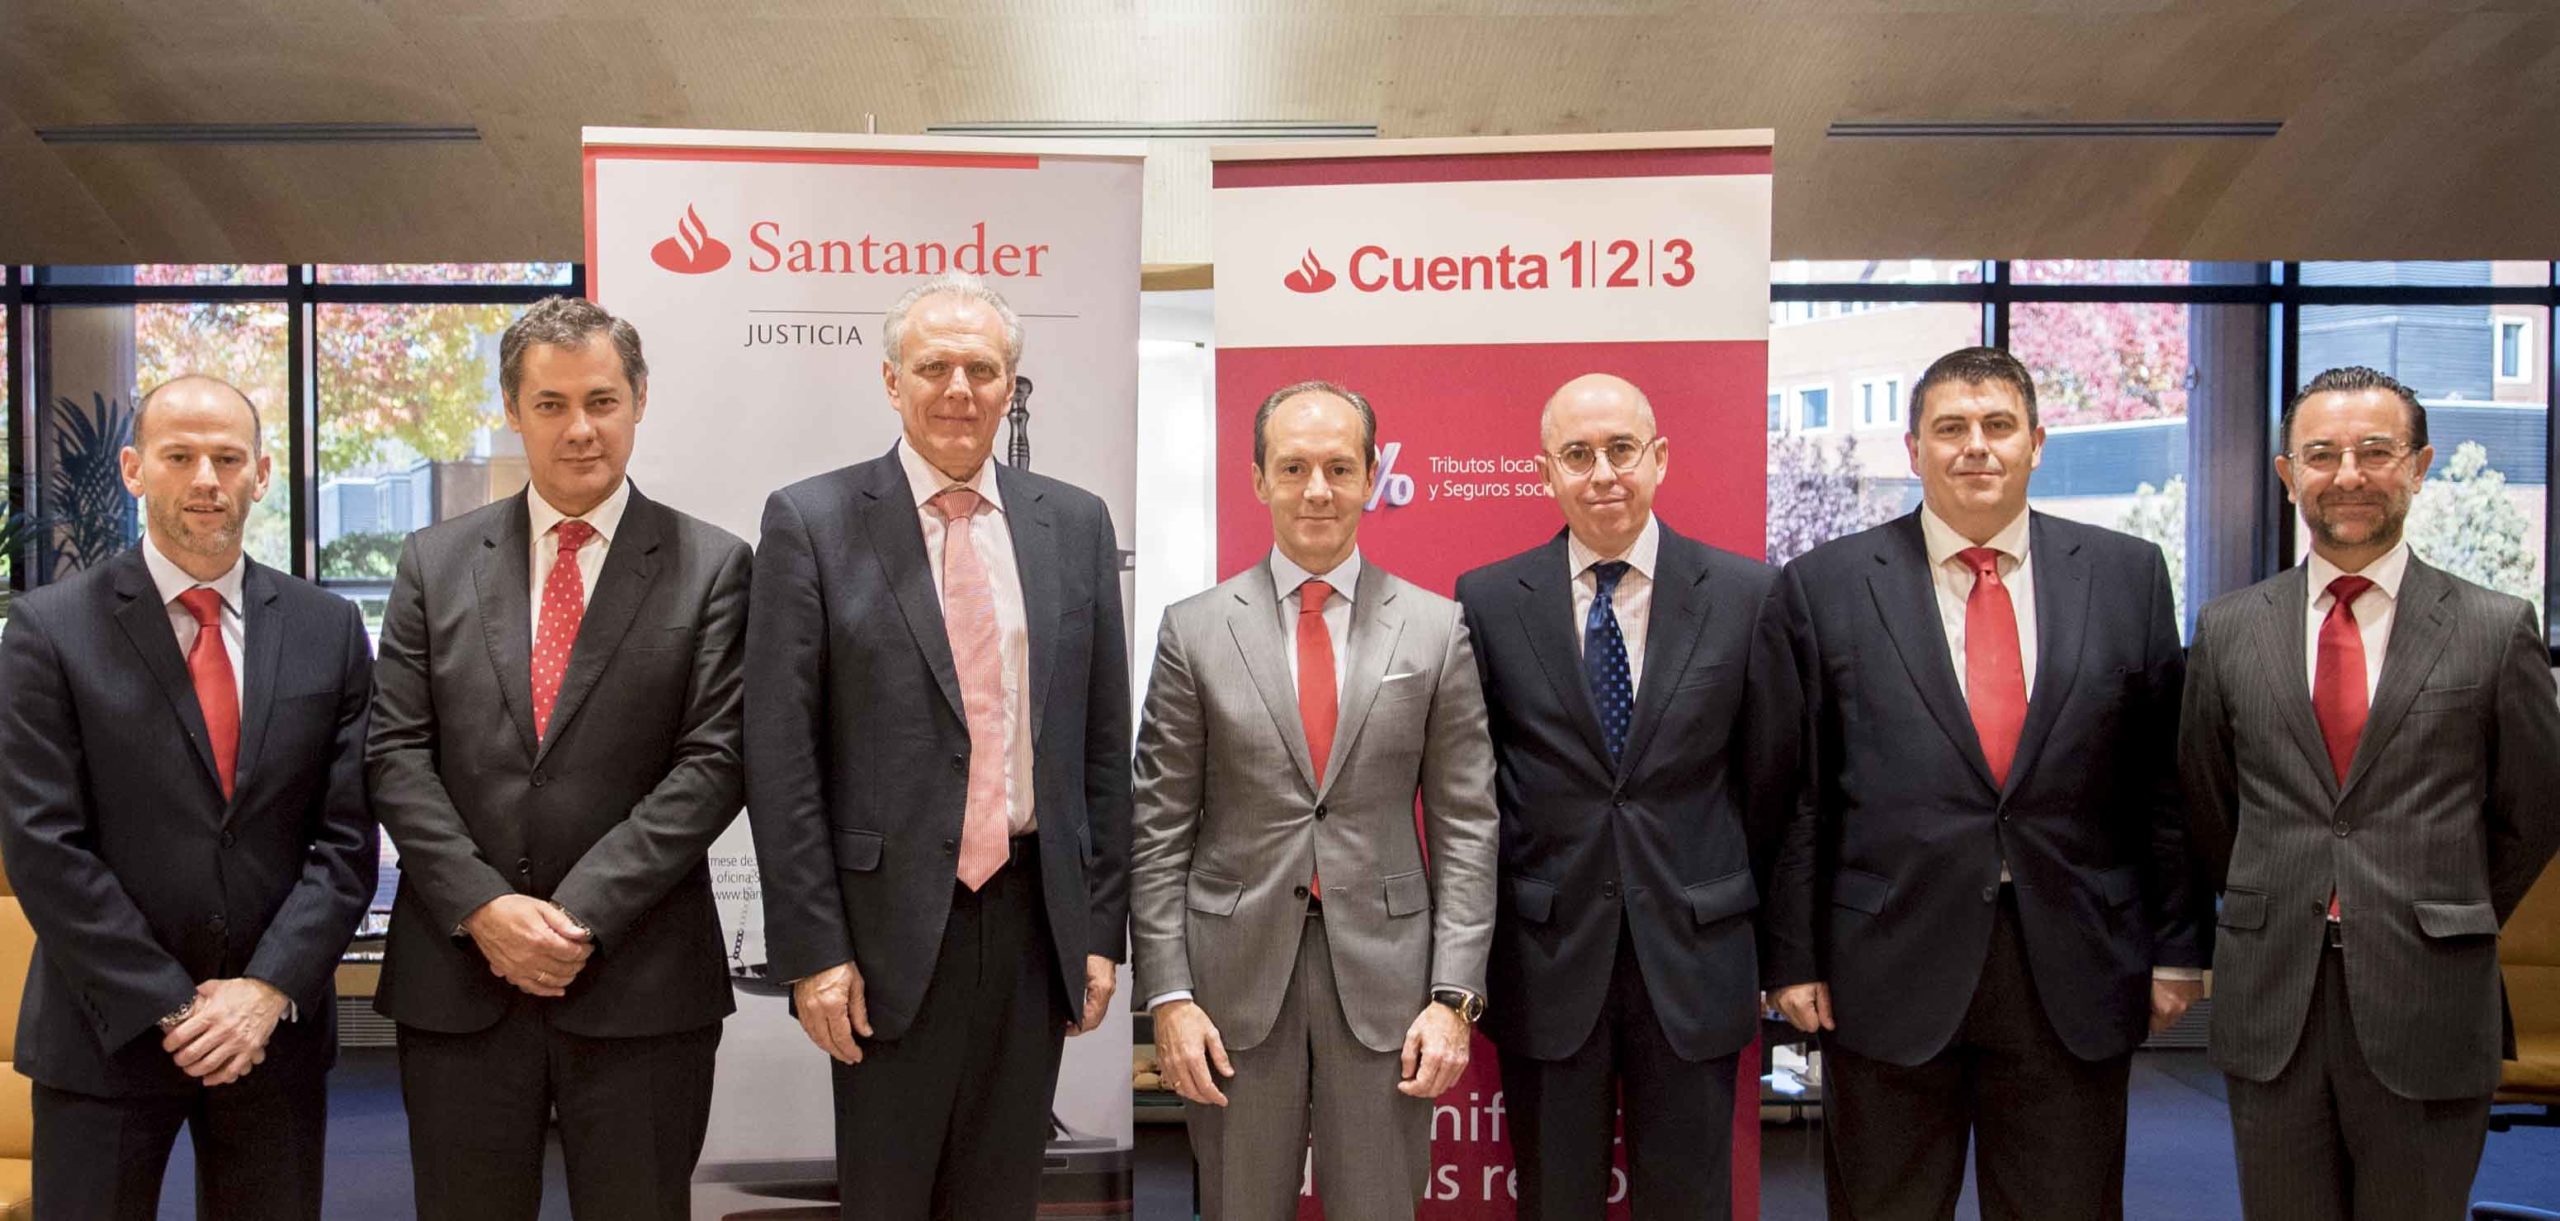 Las subastas notariales serán gestionadas en exclusiva por el Banco Santander